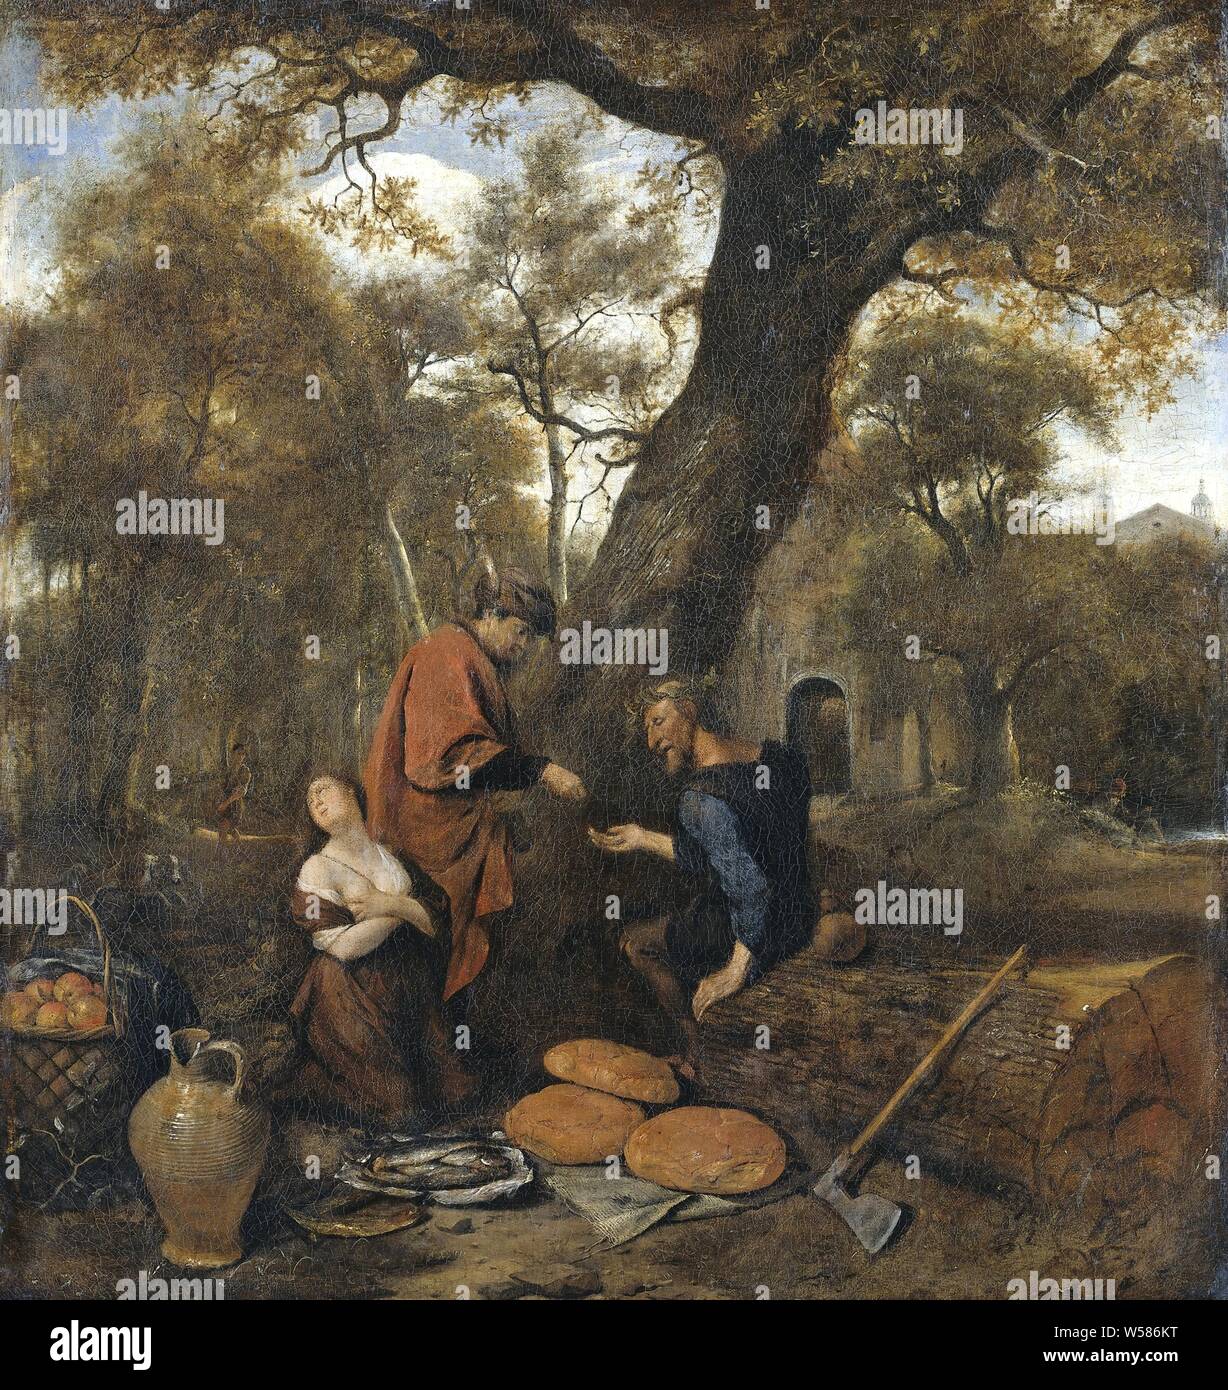 Erysichthon vende la sua figlia, Erysichthon, seduto su un tronco di albero, vende la sua figlia Mestra (Ovidio Metamorfosen VIII, 738-878). Sul pavimento sono grandi pagnotte di pane, un cesto di pesci, un boccale di grandi dimensioni e un cesto di frutta. Un'ascia è appoggiata contro il tronco di albero., Jan Havicksz. Steen, 1650 - 1660, tela, pittura a olio (vernice), h 66 cm × W 64 cm d 7,5 cm Foto Stock